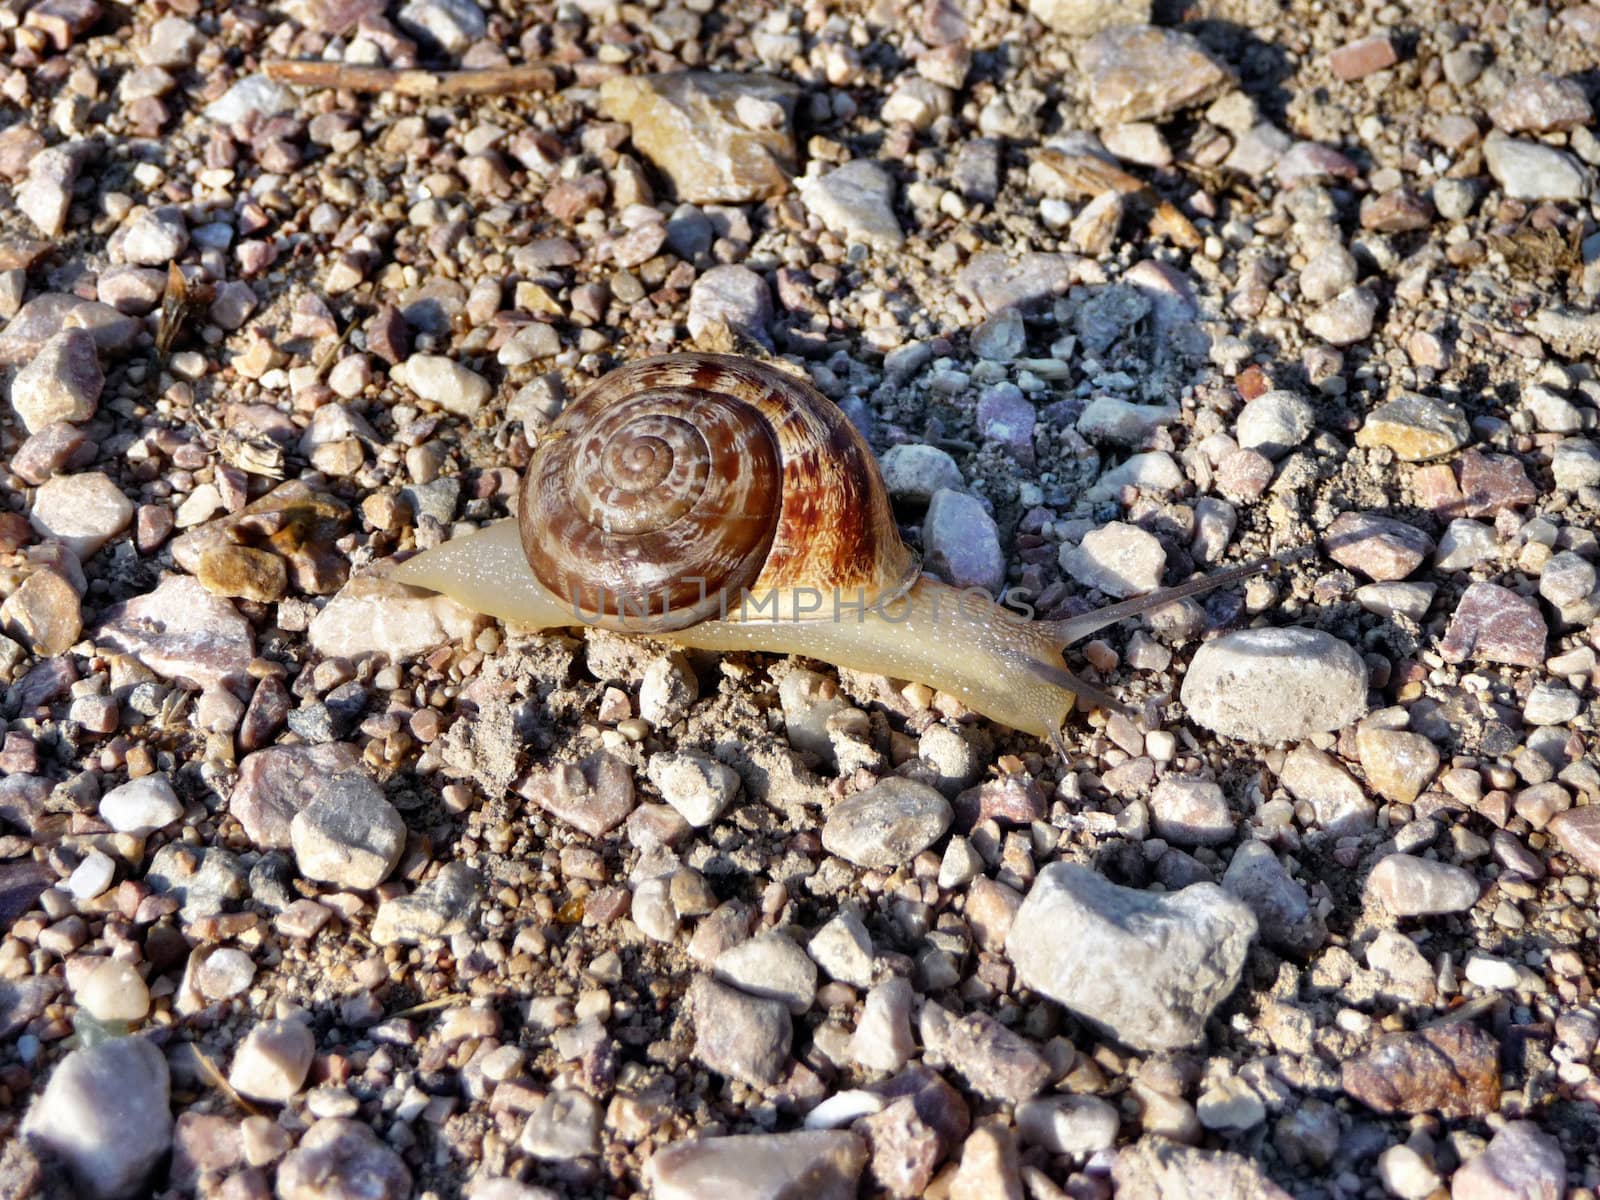 The Crimean snail creeps slowly but confidently